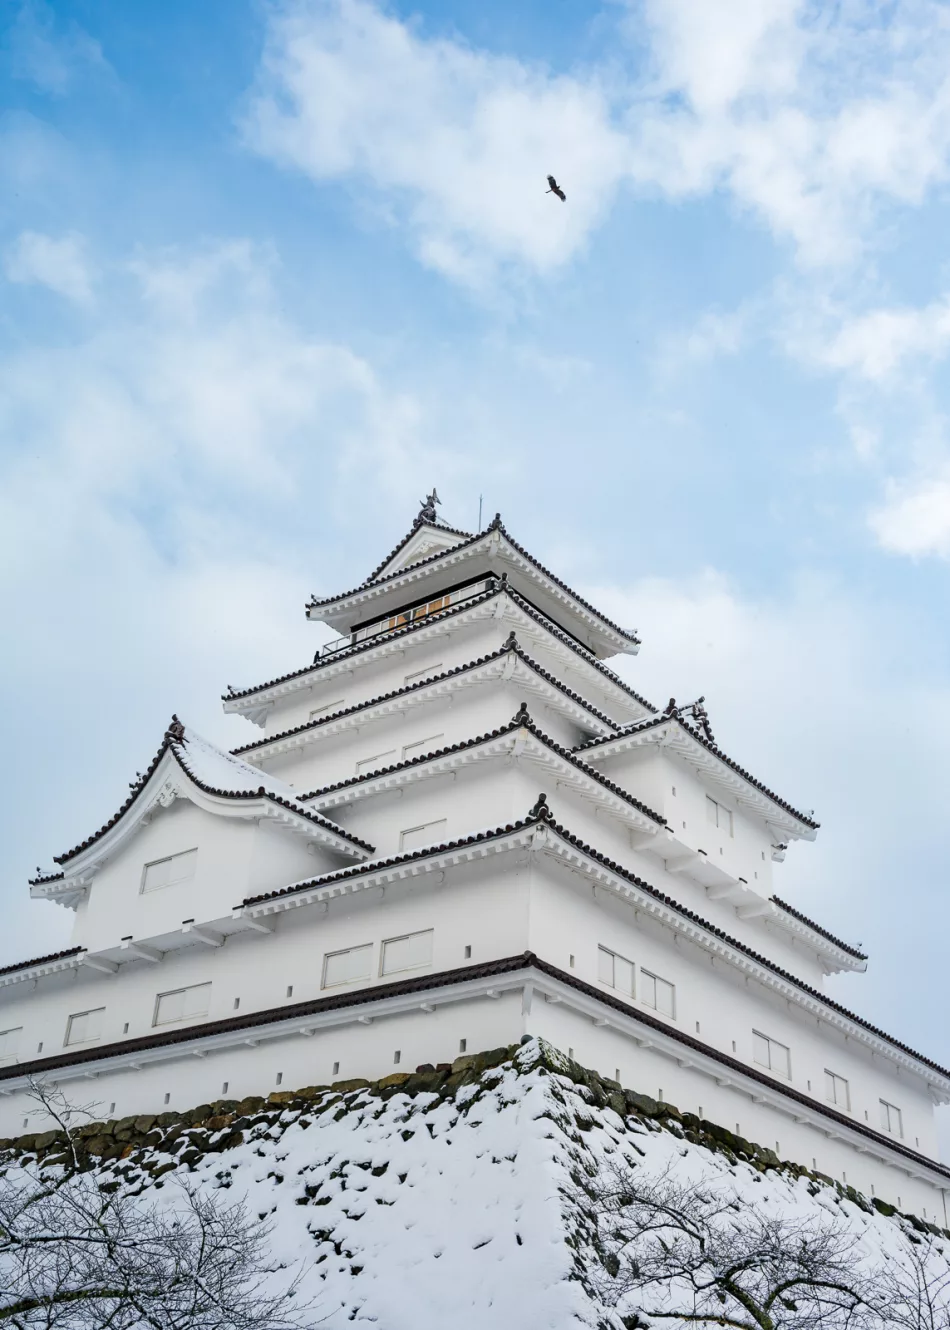 Winter scene of Tsuruga Castle in Aizu-Wakamatsu, Japan